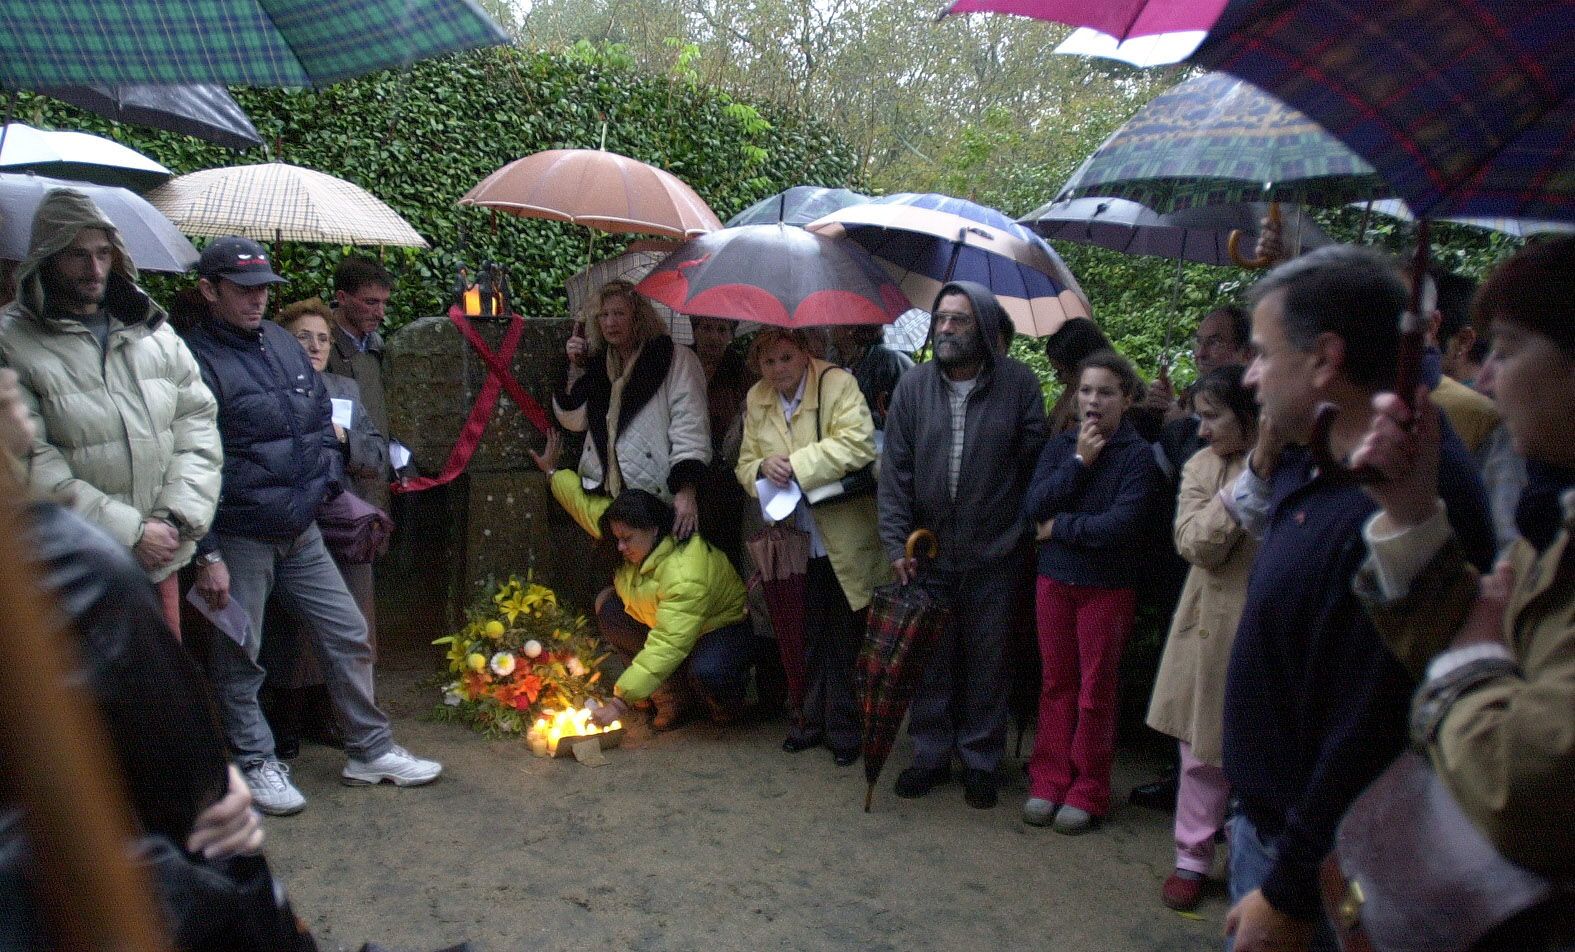 Acto en recuerdo a las víctimas del VIH Sida en los jardines del Museo Quiñones de León de Castrelos organizado por el colectivo de apoyo Imán en 2002